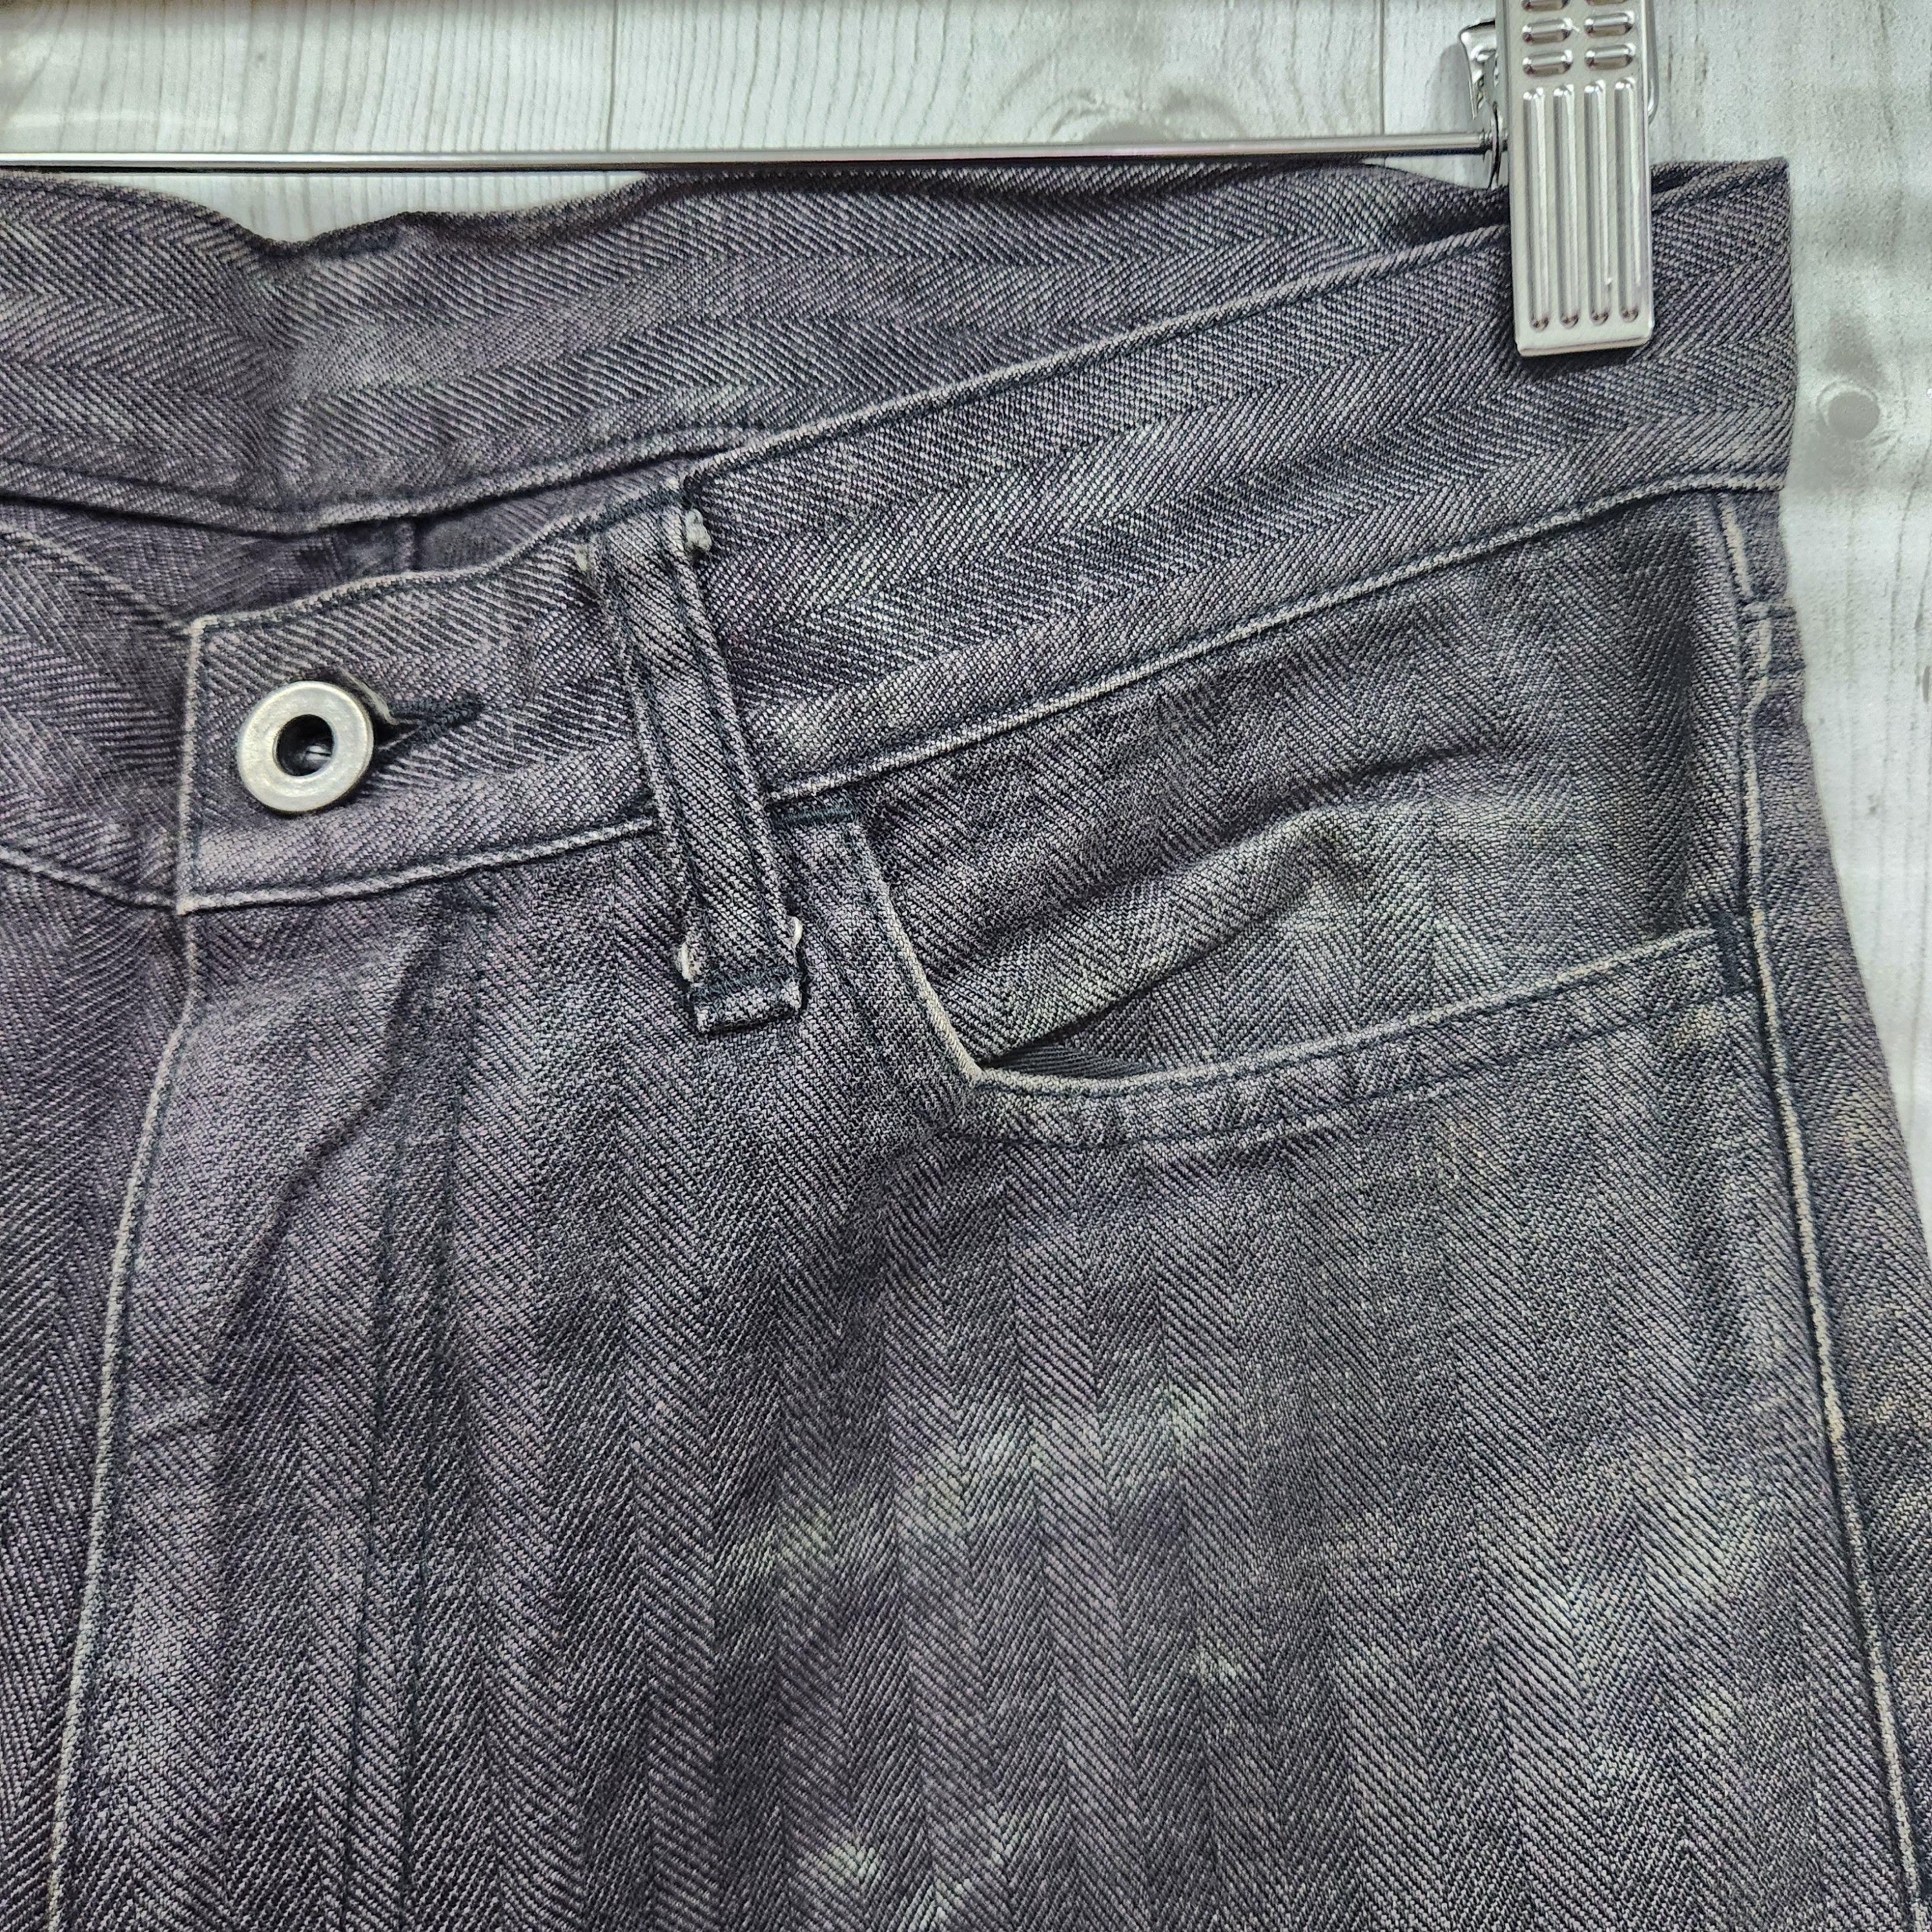 Japanese Brand - Flared Edge Rupert Denim Japan Jeans 70s Style - 2